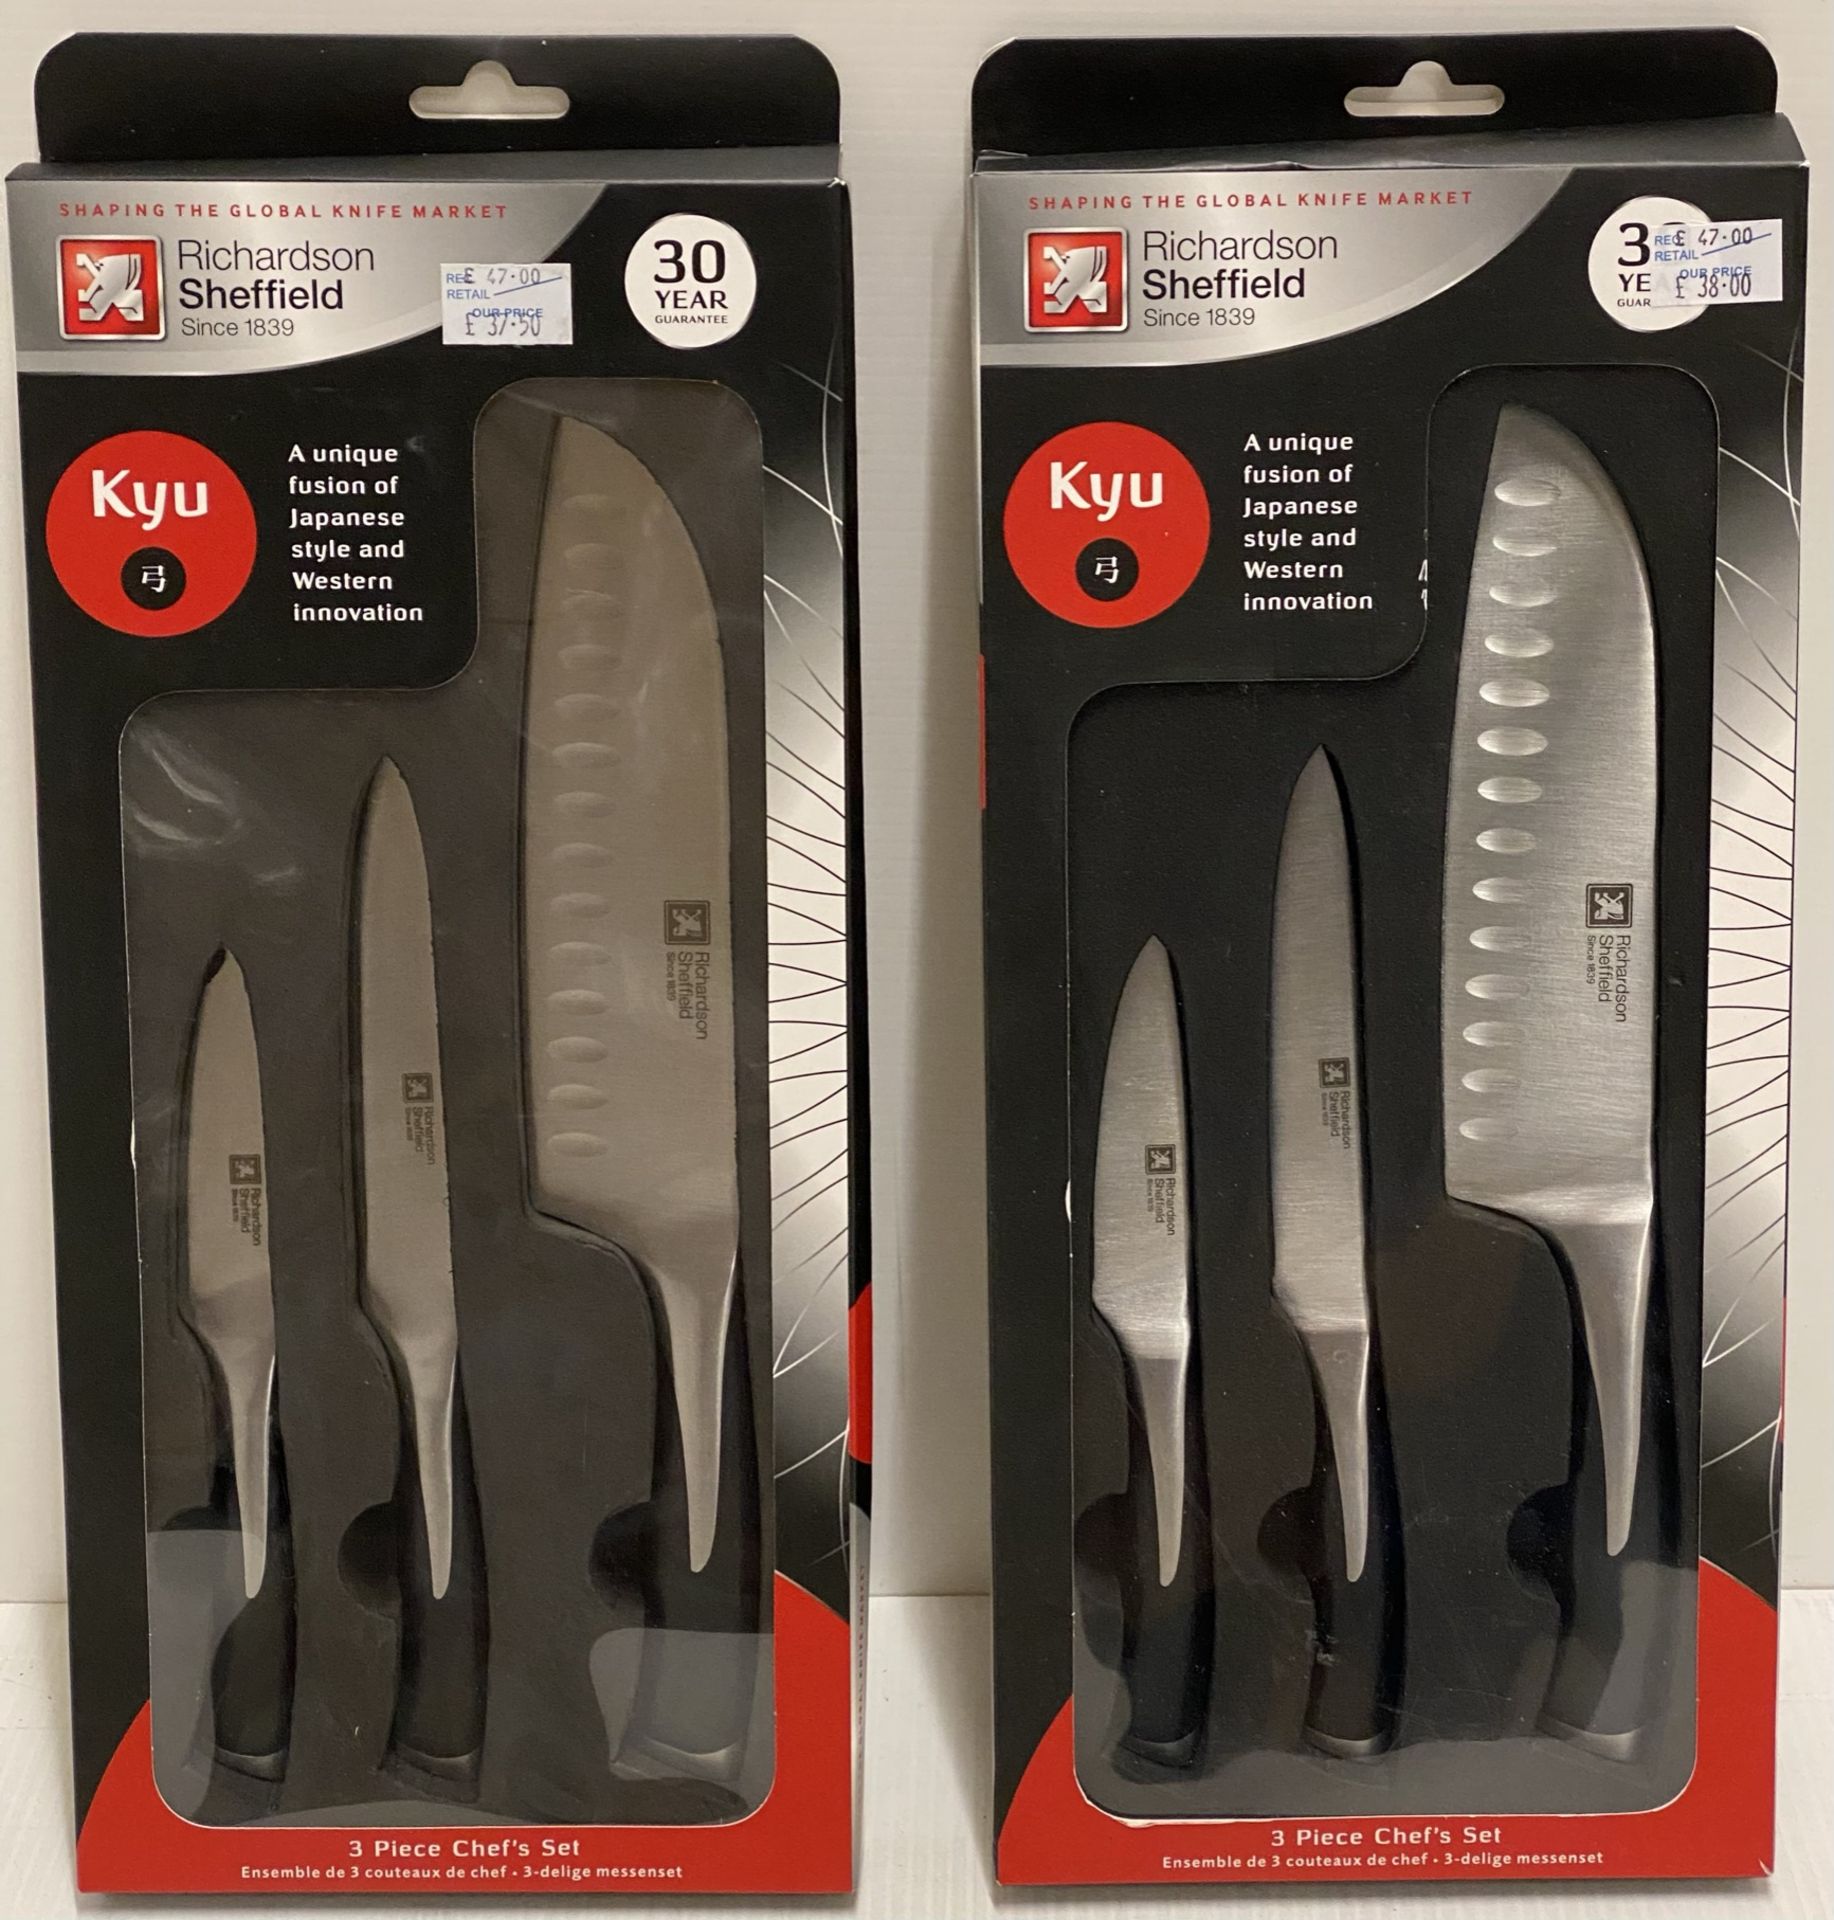 2 x Richardson Sheffield Kyu 3 Piece Chef's Knives Sets - RRP £47.